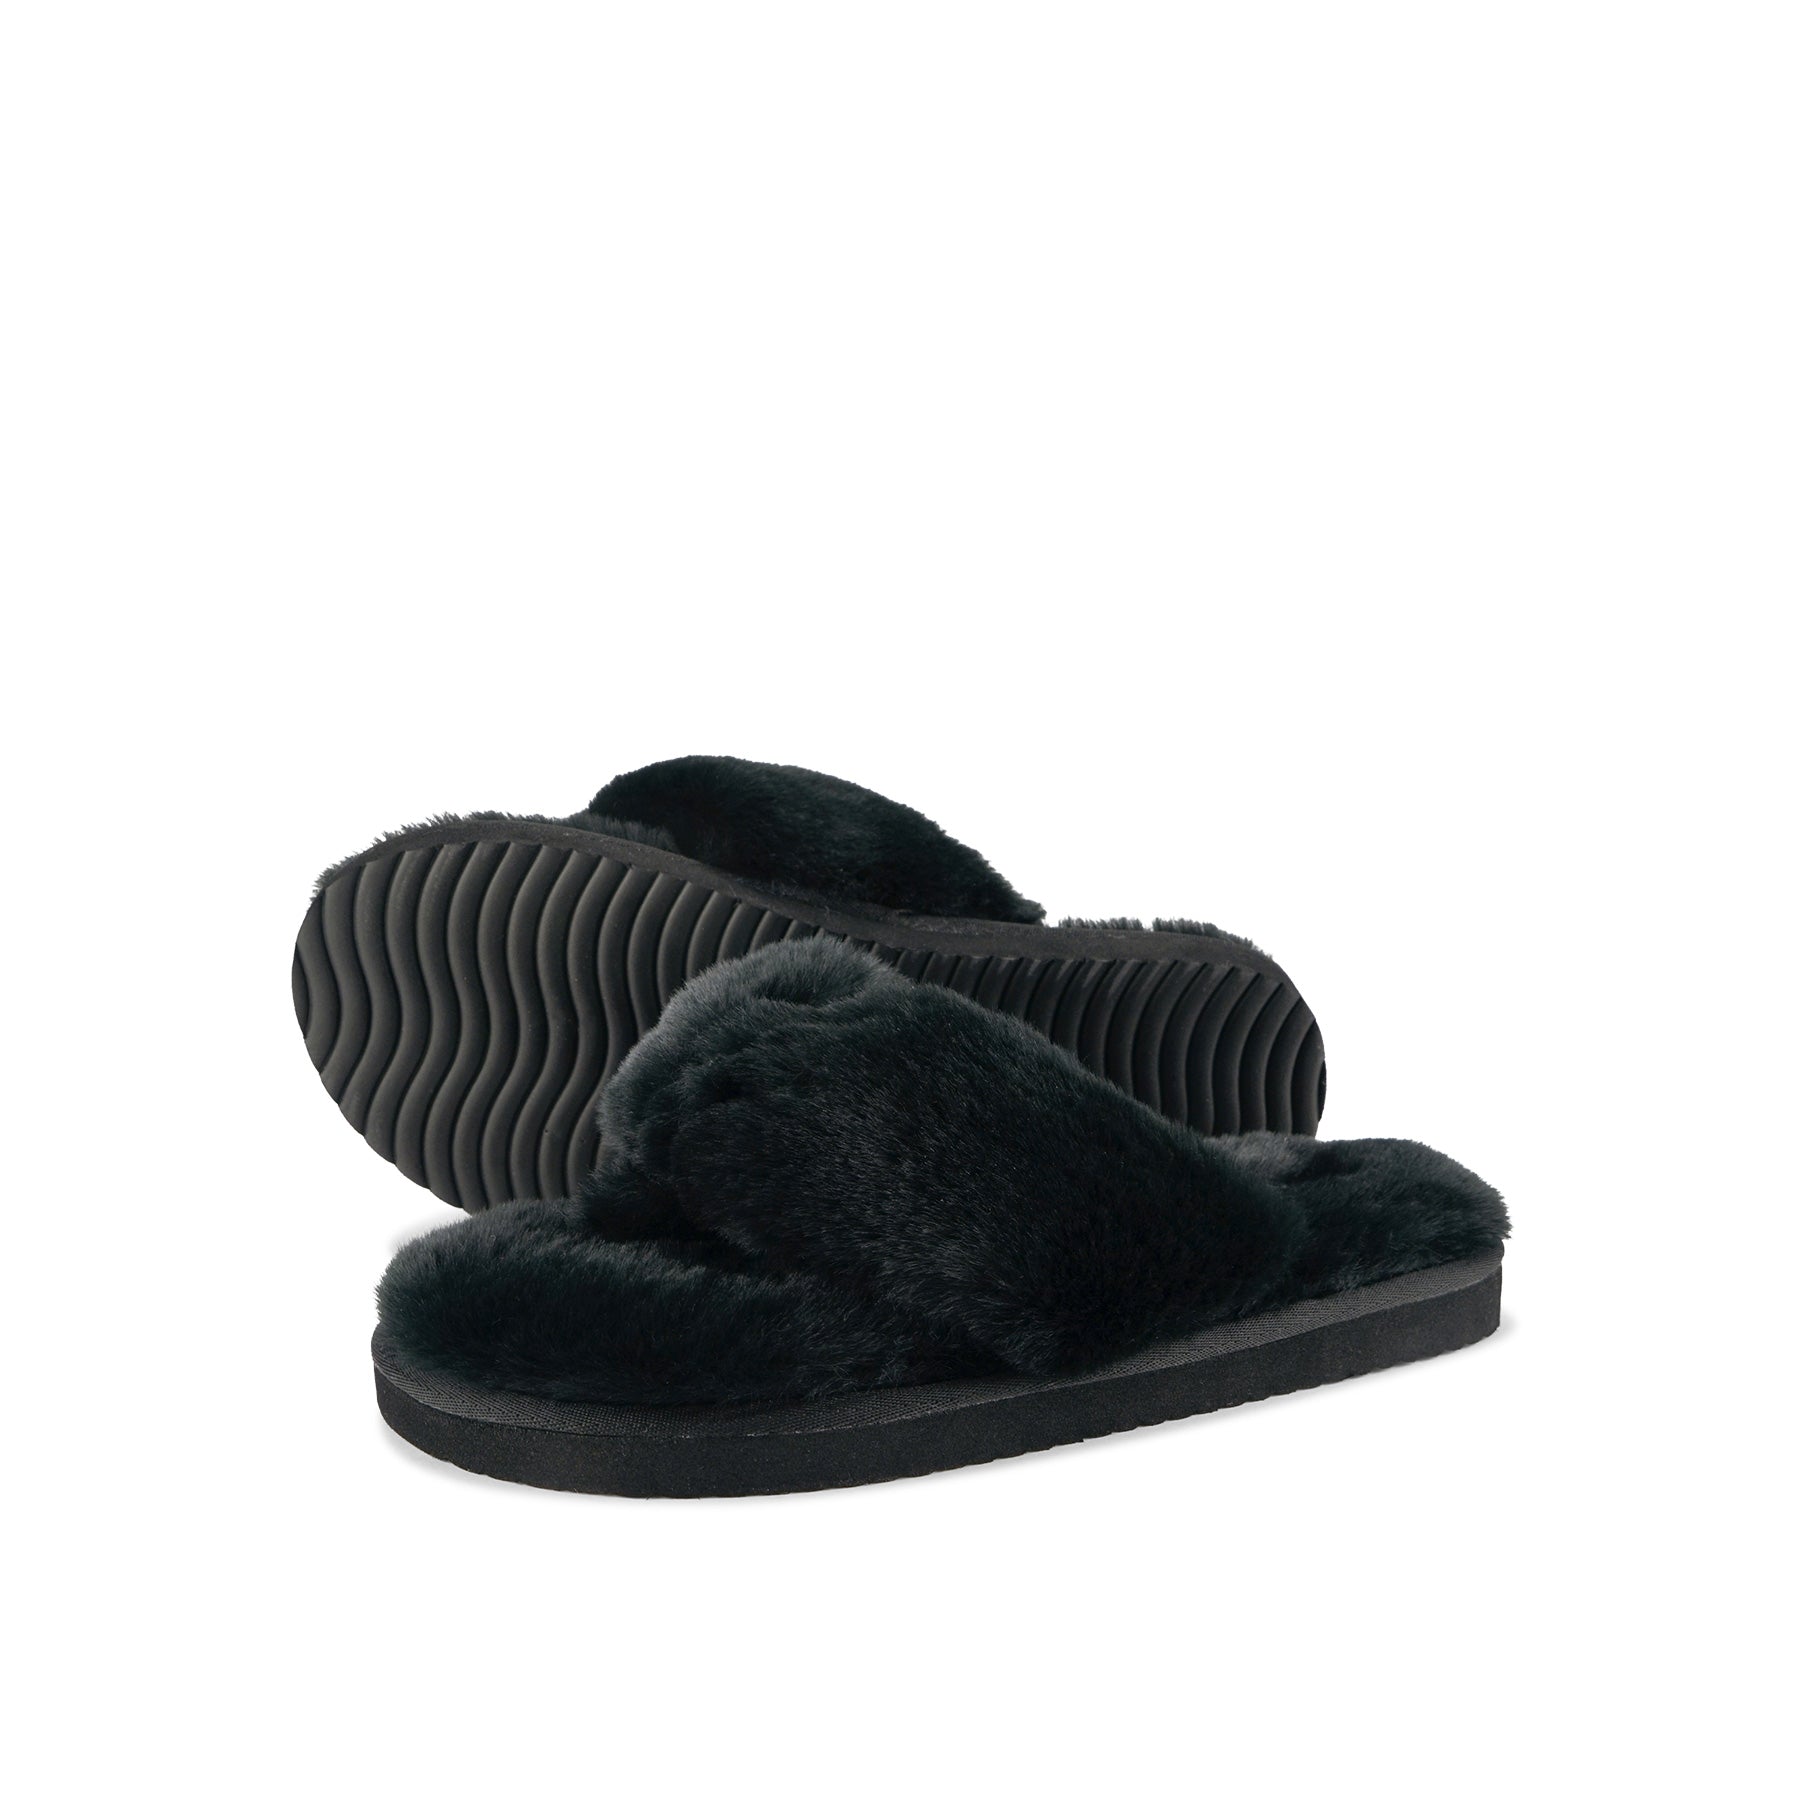 Cozy Fur Flip Flop in color black by Flip*Flop Original